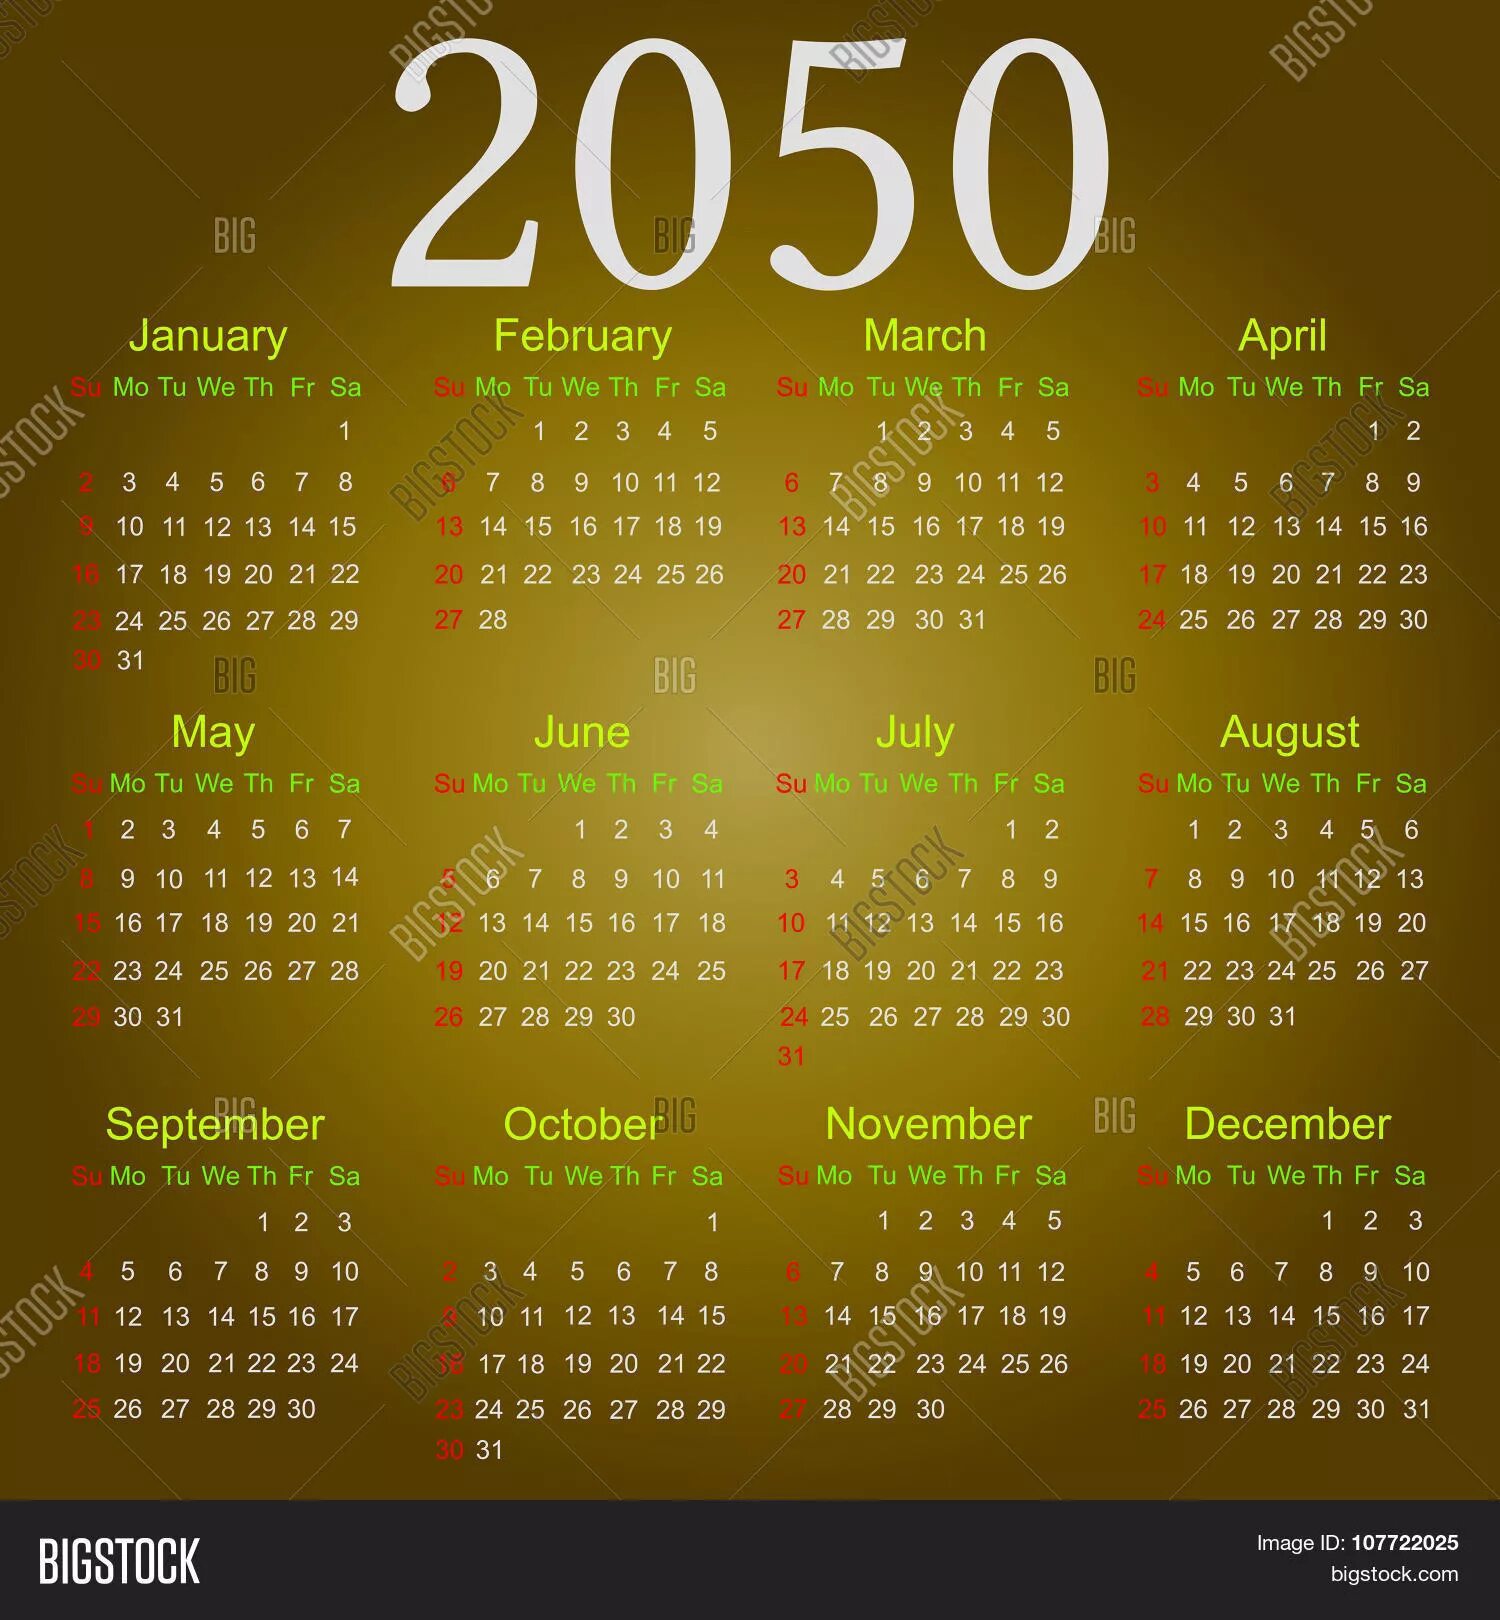 Какой день недели 30 июля 2050 года. Календарь 2050 года. Календарь 2033 года. Календарь 2033 года по месяцам. Календарь 2050 года на русском.